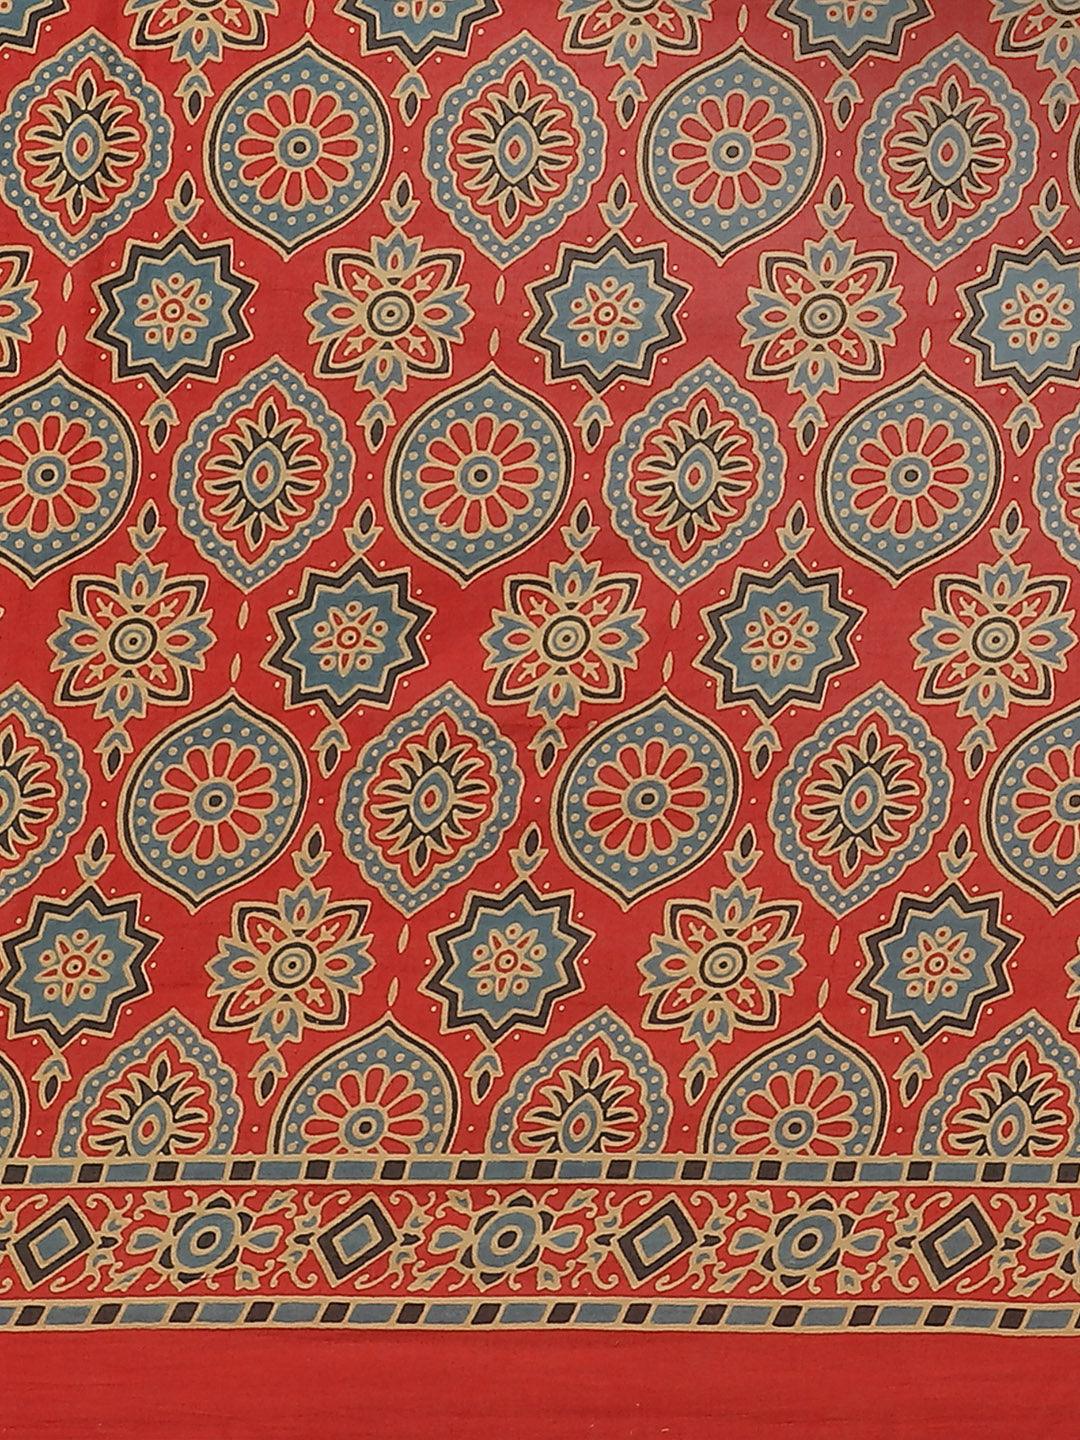 Red Printed Cotton Saree